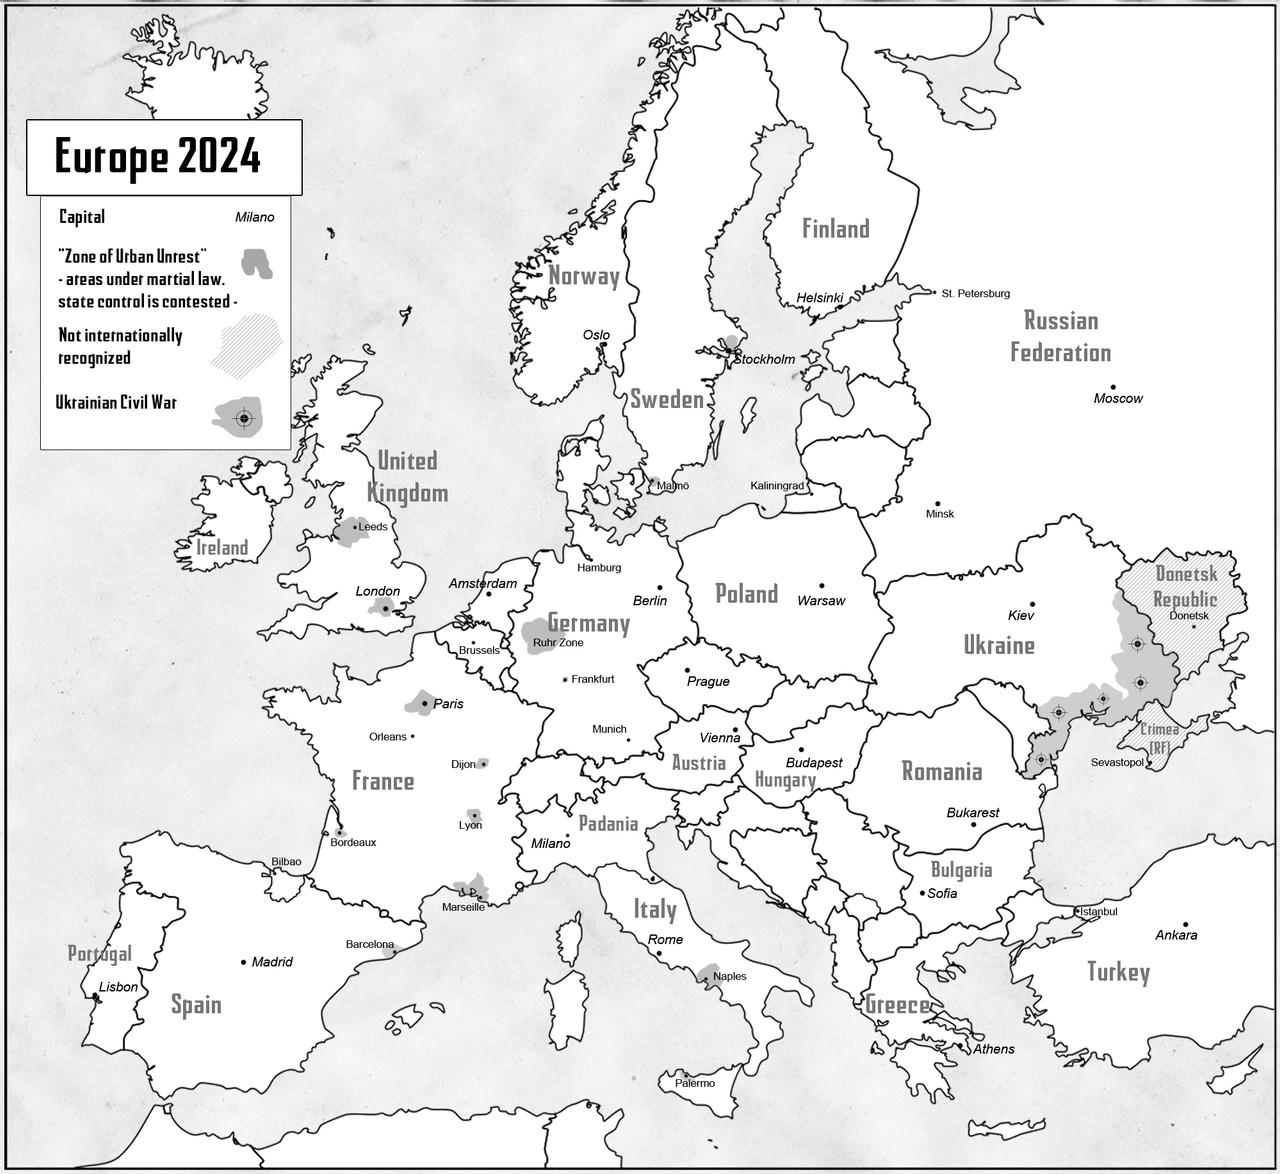 Europe 2024 By Stratomunchkin D7o7jrn Fullview ?token=eyJ0eXAiOiJKV1QiLCJhbGciOiJIUzI1NiJ9.eyJzdWIiOiJ1cm46YXBwOjdlMGQxODg5ODIyNjQzNzNhNWYwZDQxNWVhMGQyNmUwIiwiaXNzIjoidXJuOmFwcDo3ZTBkMTg4OTgyMjY0MzczYTVmMGQ0MTVlYTBkMjZlMCIsIm9iaiI6W1t7ImhlaWdodCI6Ijw9MTE3NCIsInBhdGgiOiJcL2ZcLzBjZGExMGQzLWJiZTItNDA1MC04MmQxLTQzYTI2YTBkOGNjYlwvZDdvN2pybi04MGQ3Y2IxZC01YWFmLTRjZDAtOWExZC03YzQzNjBkMzQ4YmUuanBnIiwid2lkdGgiOiI8PTEyODAifV1dLCJhdWQiOlsidXJuOnNlcnZpY2U6aW1hZ2Uub3BlcmF0aW9ucyJdfQ.lD66iEiNMsXaEiDPwG8C6VBeqQBRzZG7HLzH40FNkEA